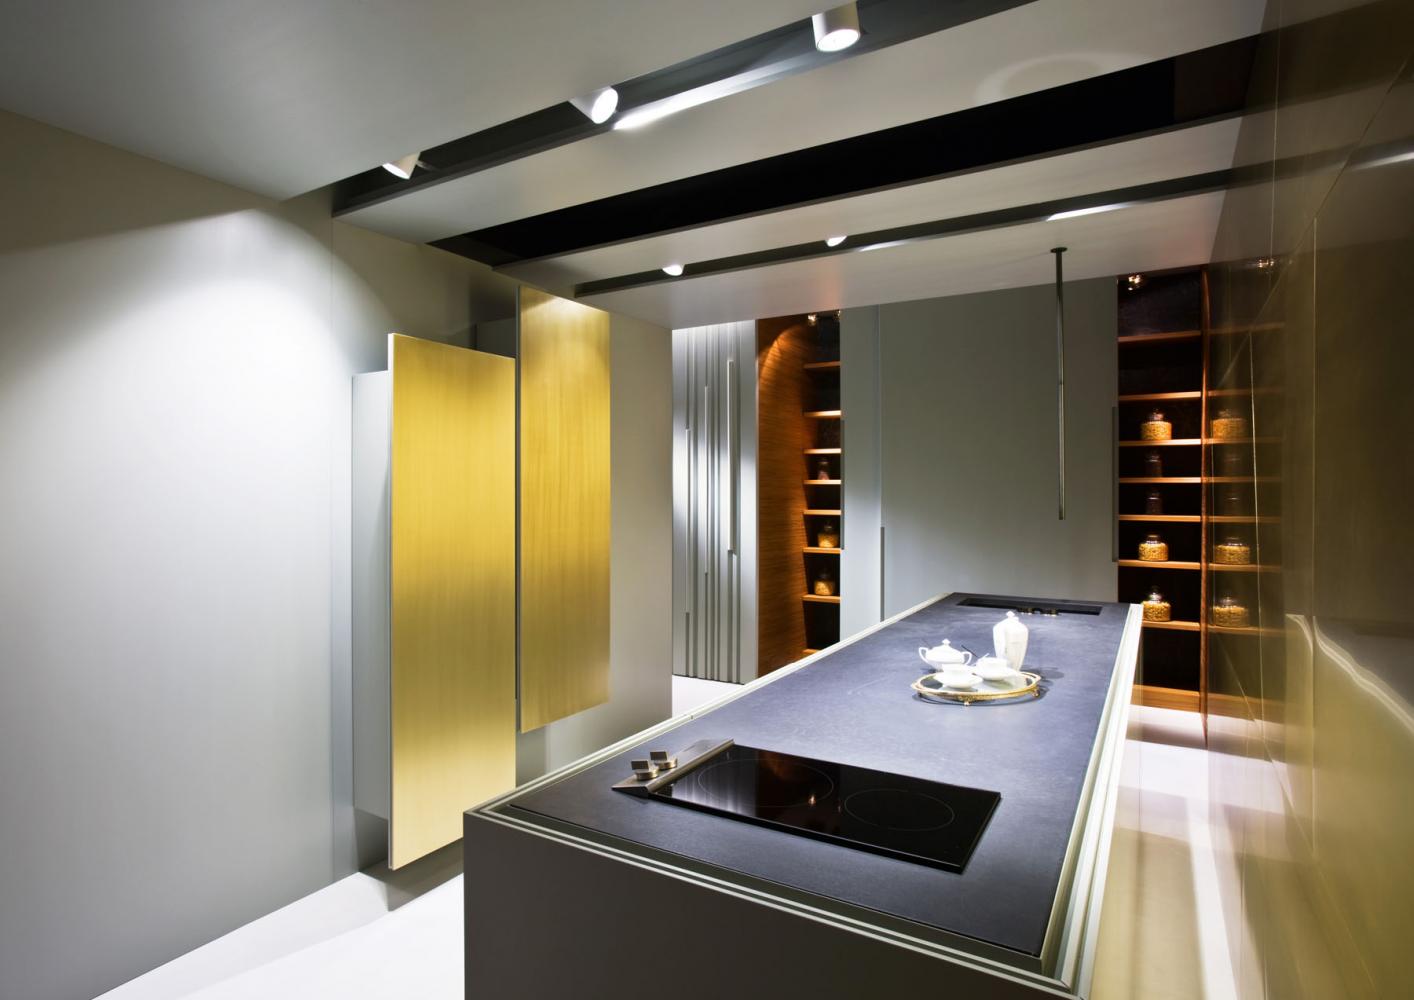 Bespoke luxury modern kitchen